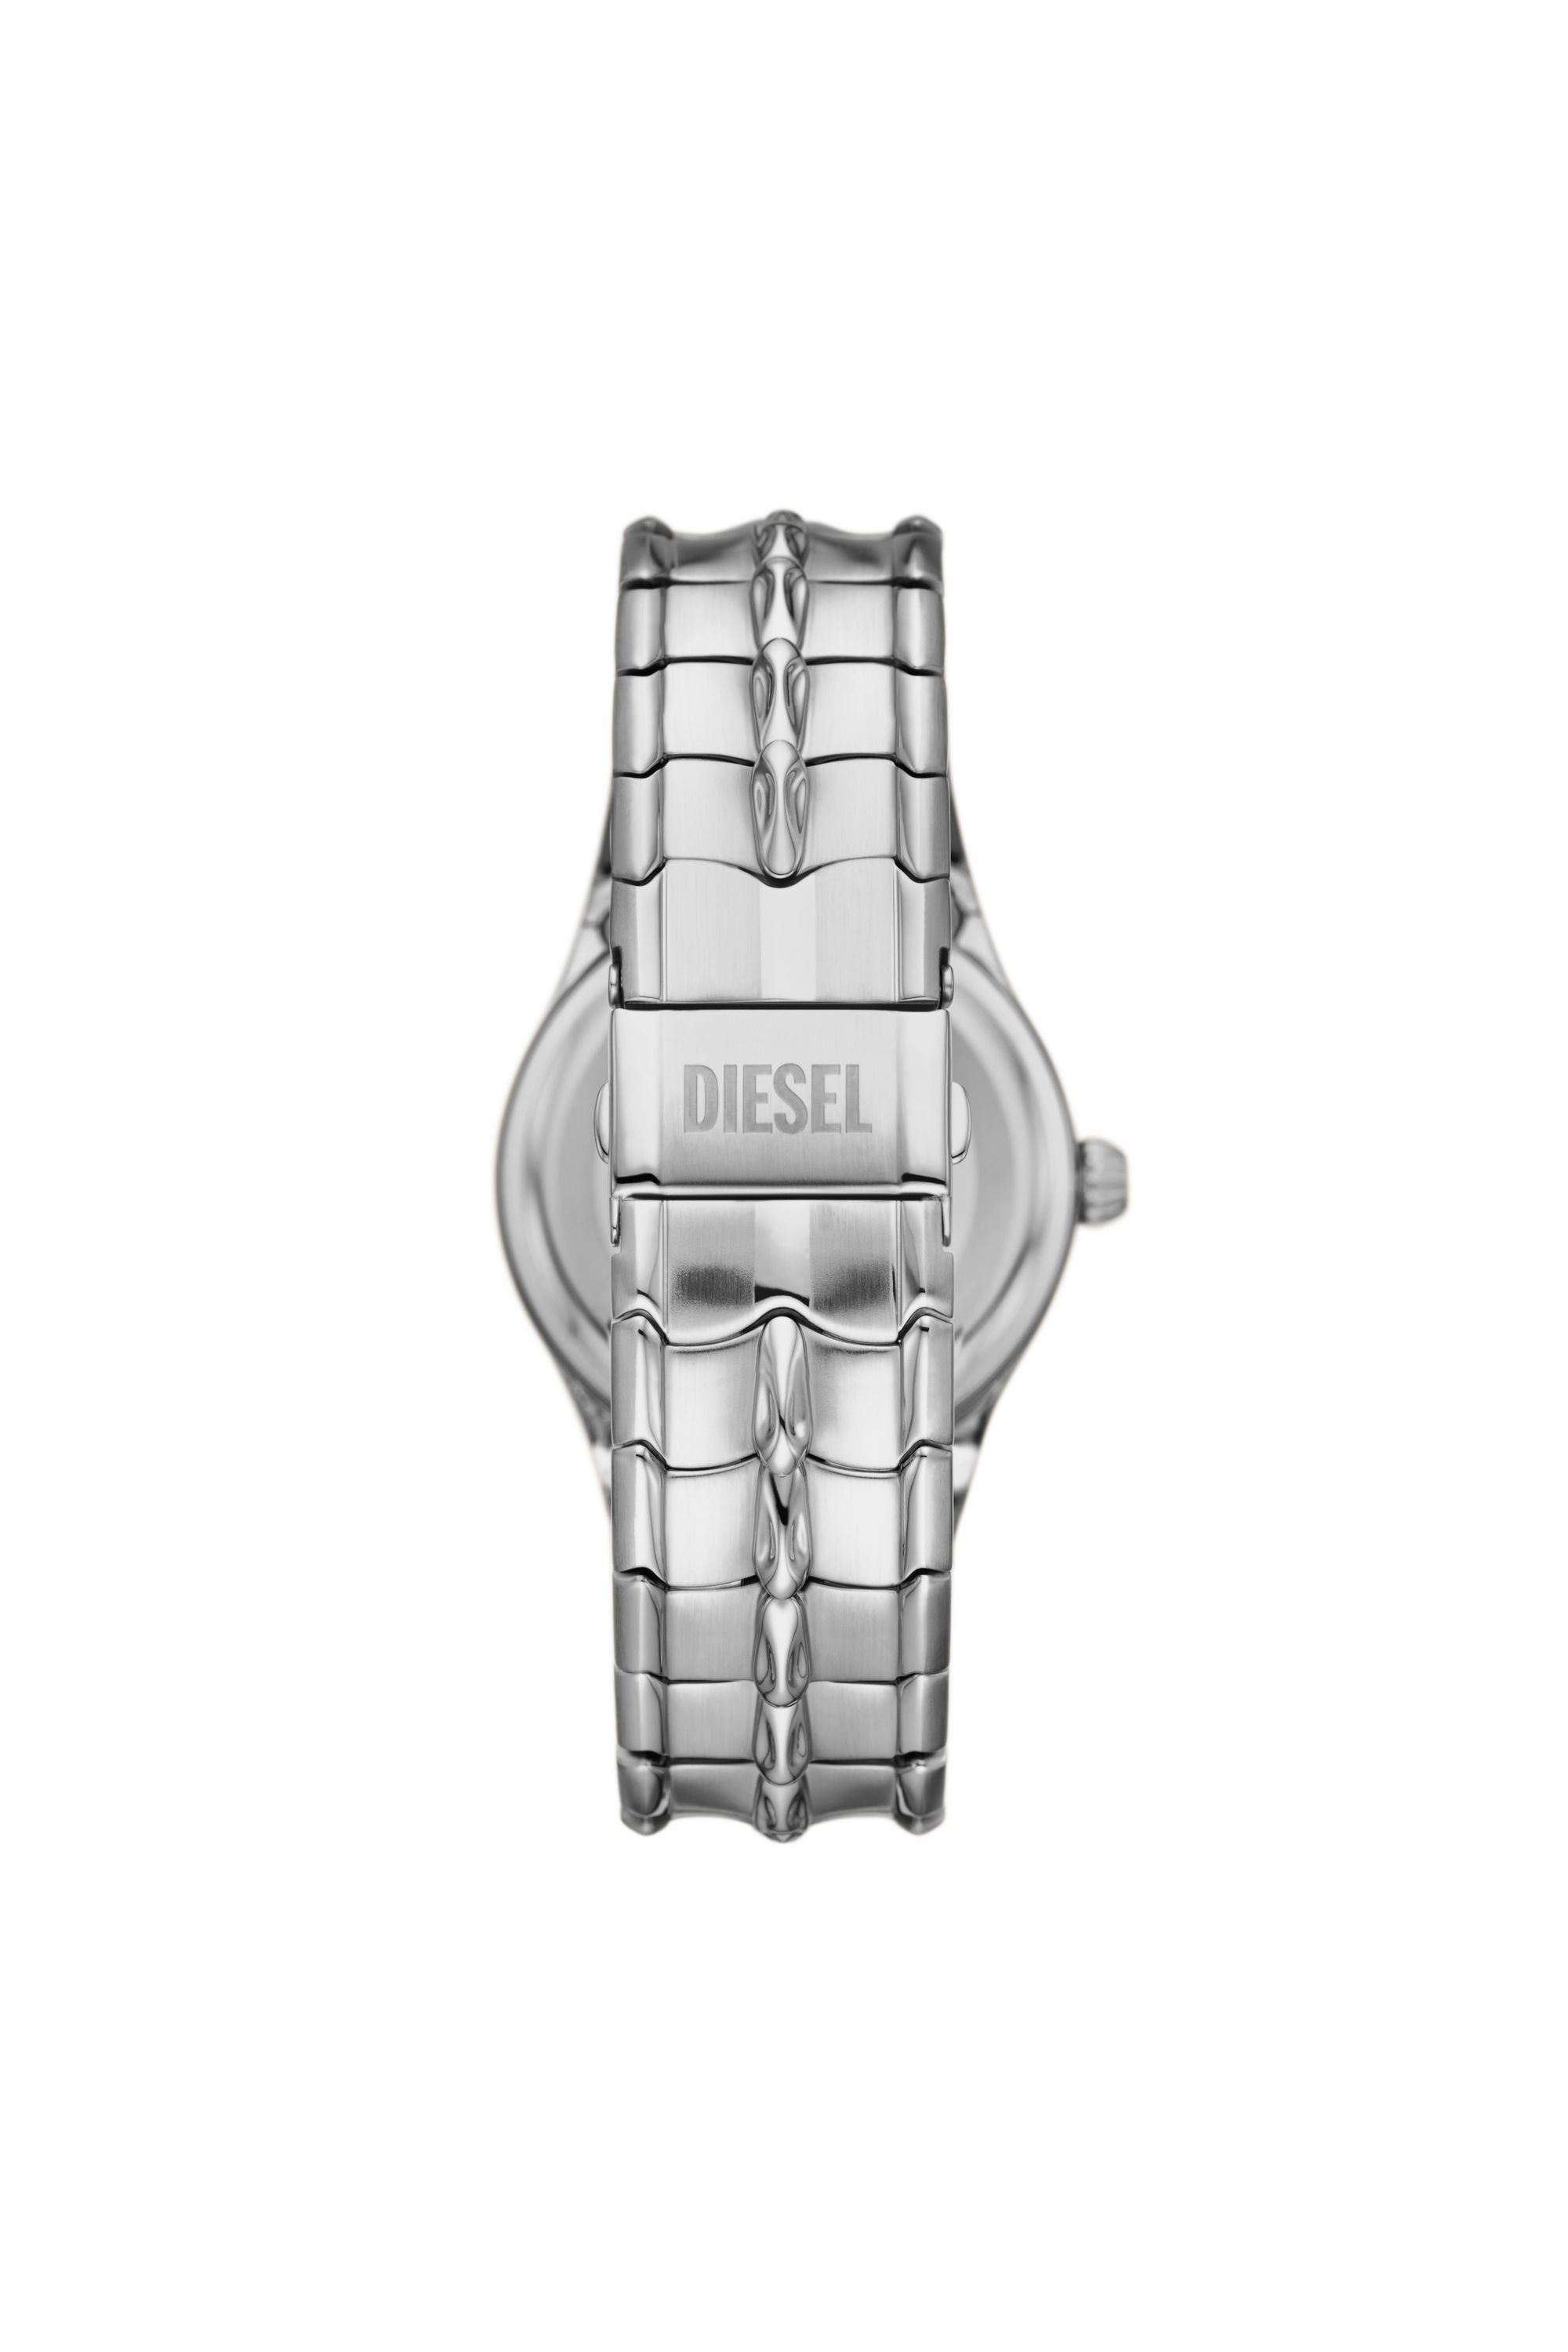 Diesel - DZ2200, Hombre Reloj Vert de acero inoxidable in Plateado - Image 2